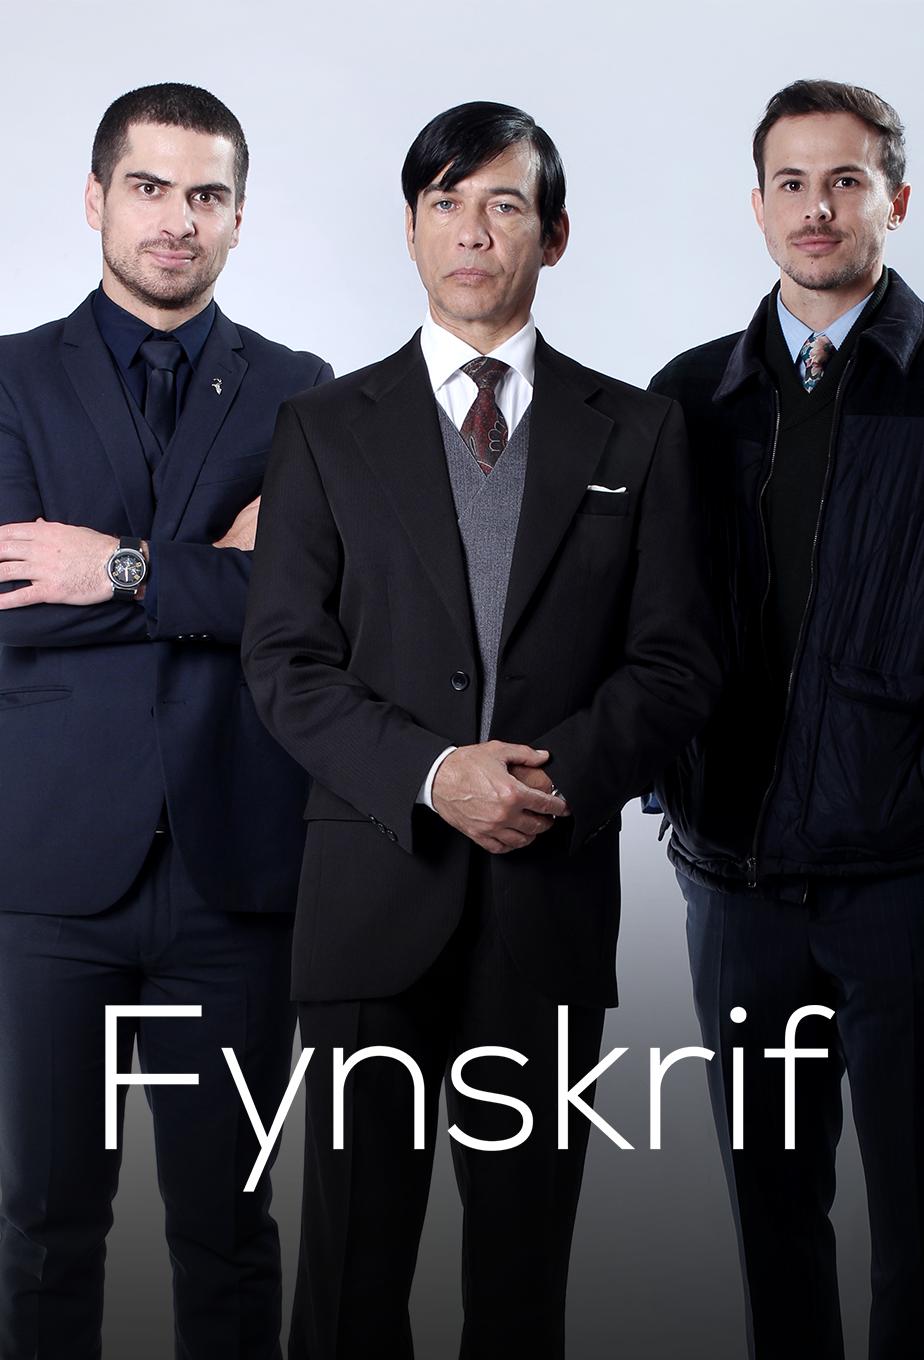 TV ratings for Fynskrif (Fine Print) in Irlanda. kykNET TV series